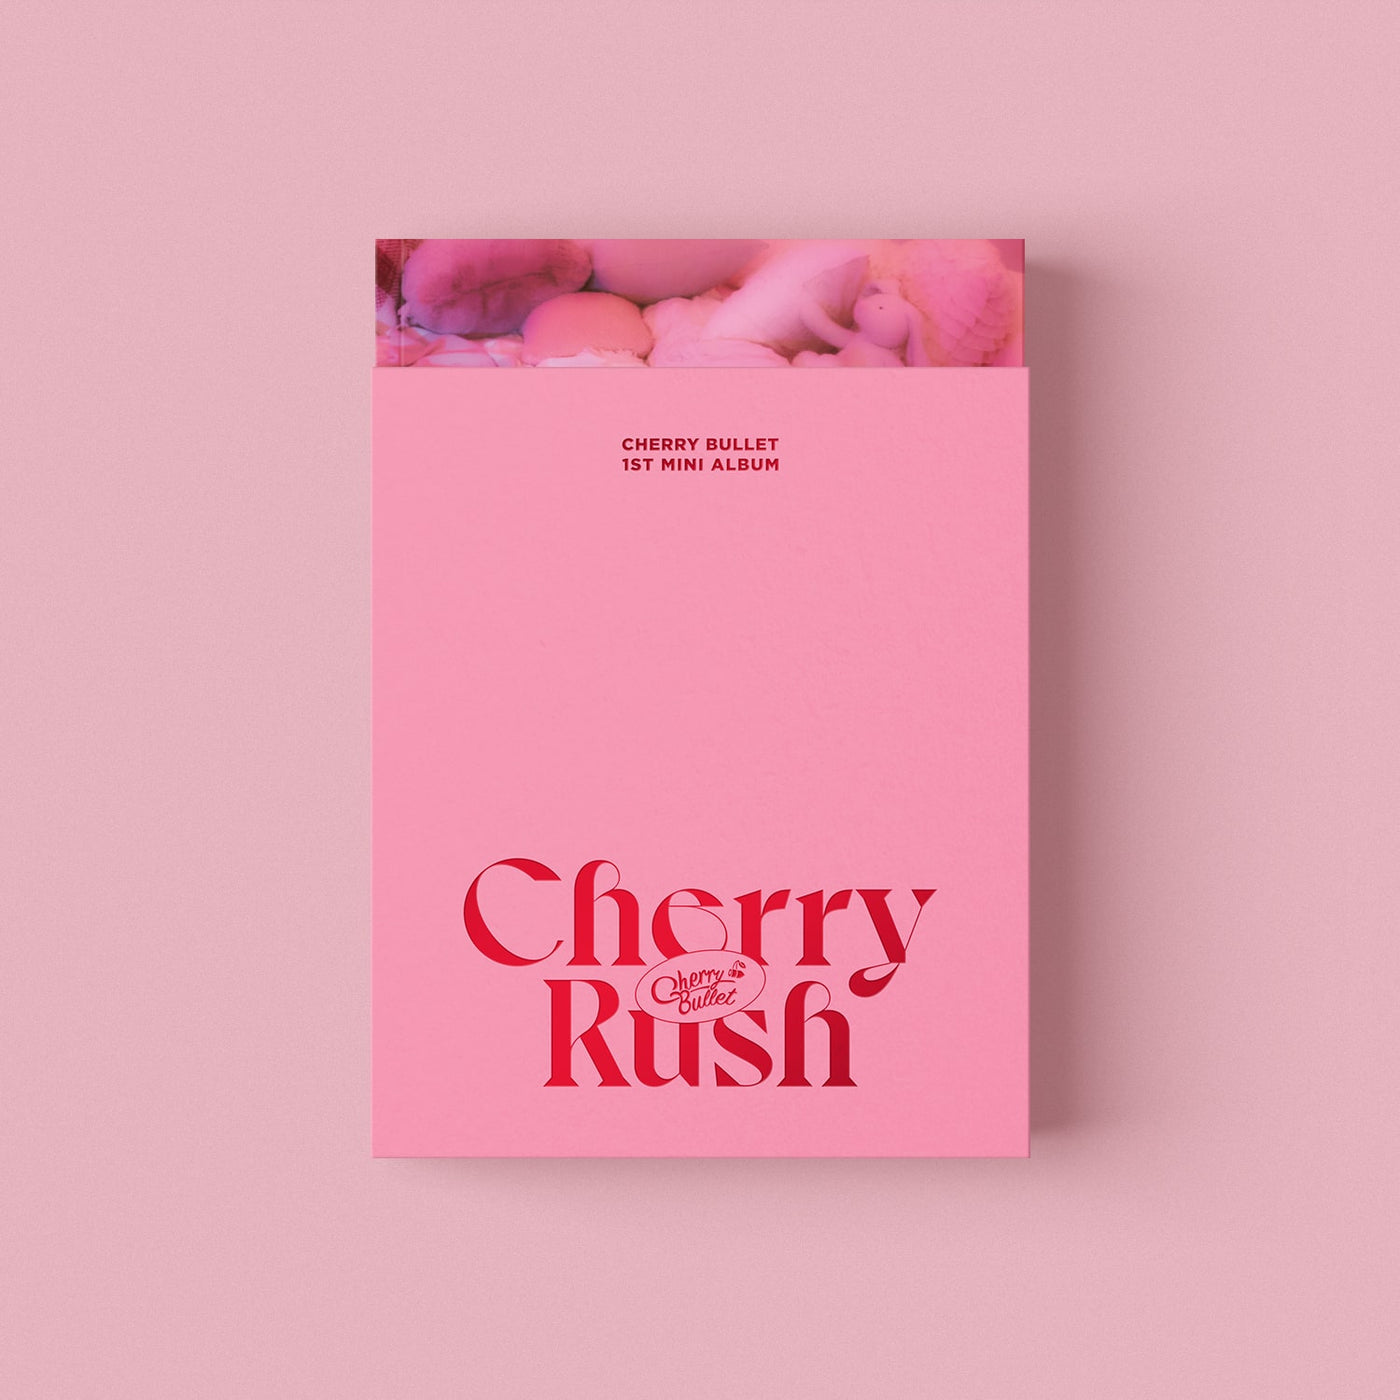 Cherry Bullet - Cherry Rush 🇰🇷